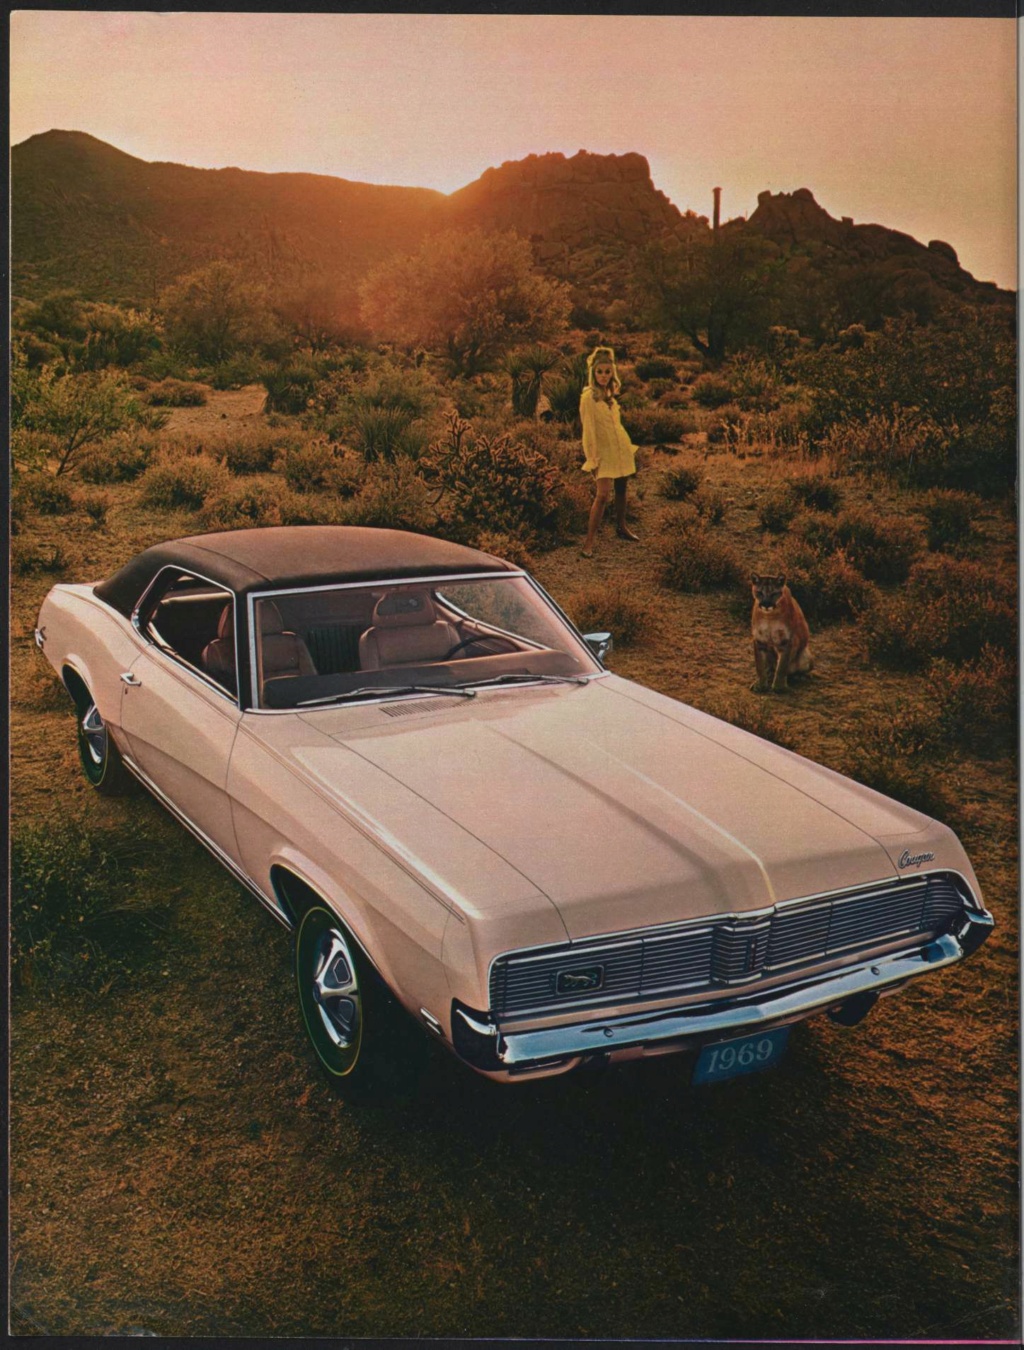  Brochure de vente Mercury Cougar 1969 en Anglais Broch144